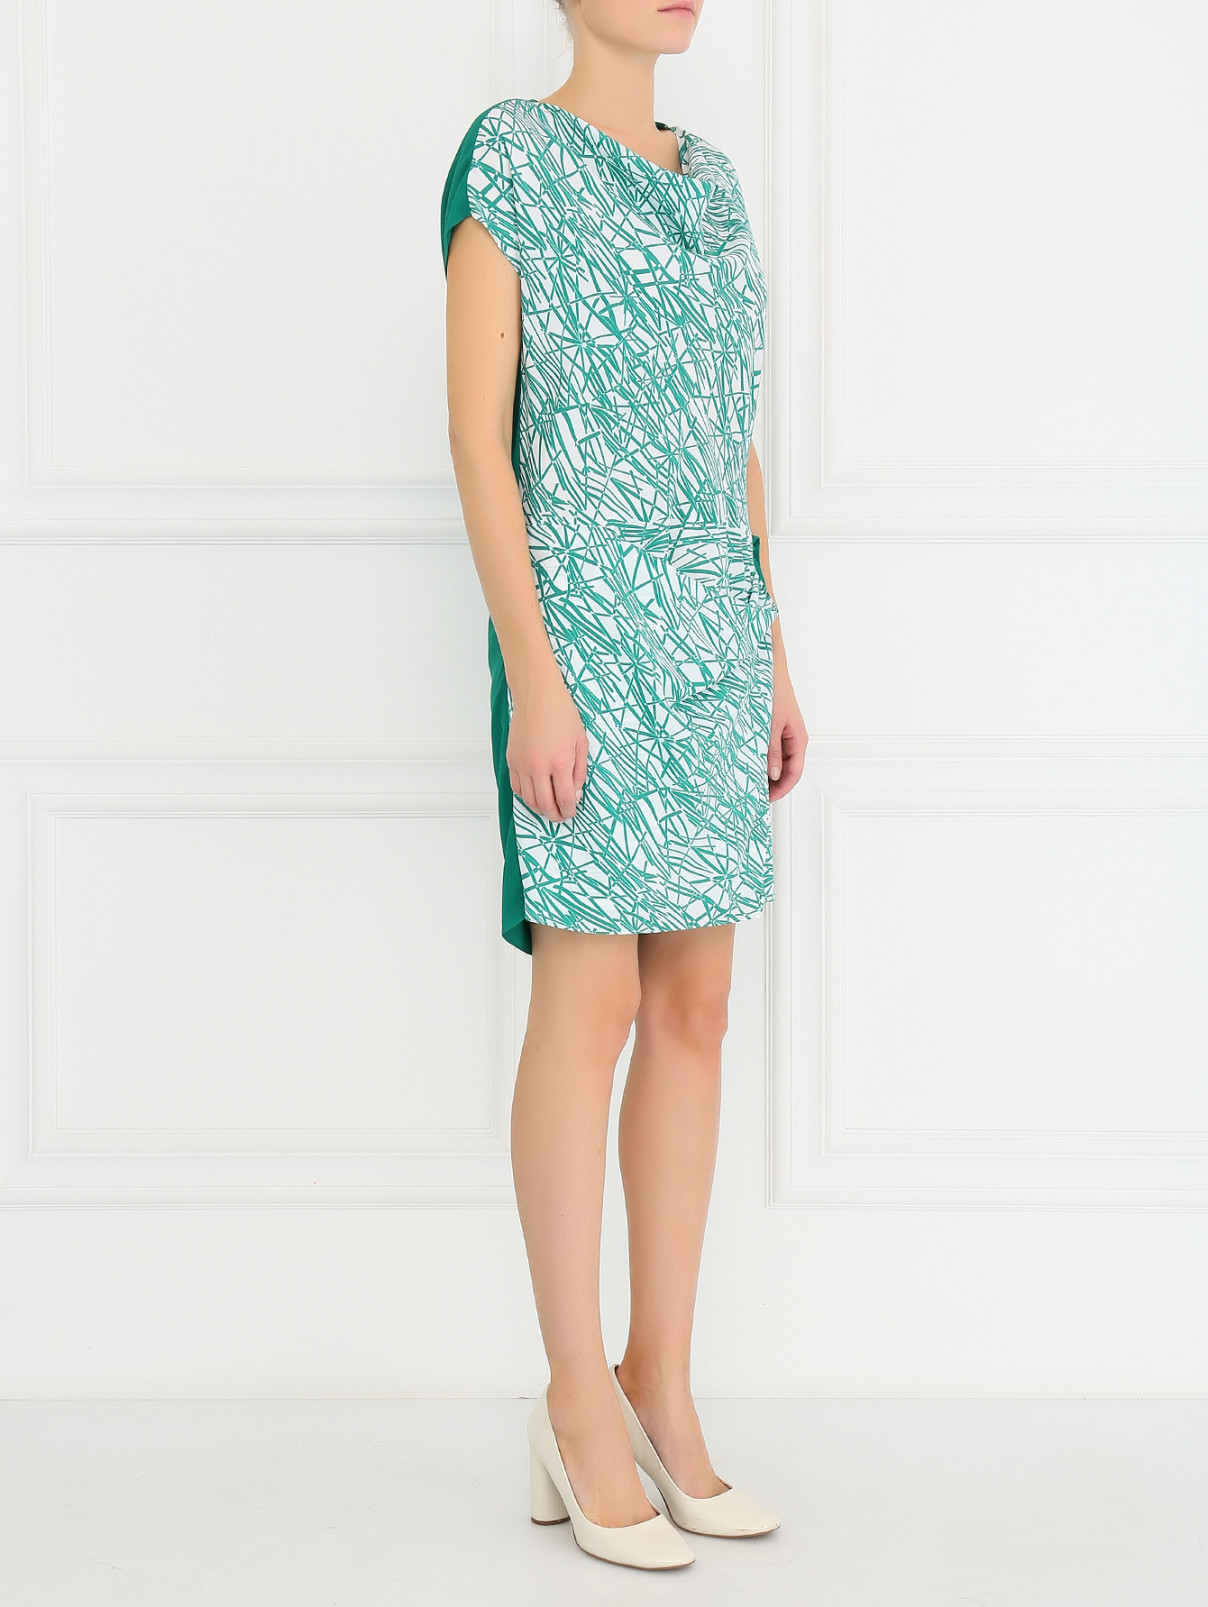 Платье-мини с запахом Antonio Marras  –  Модель Общий вид  – Цвет:  Зеленый